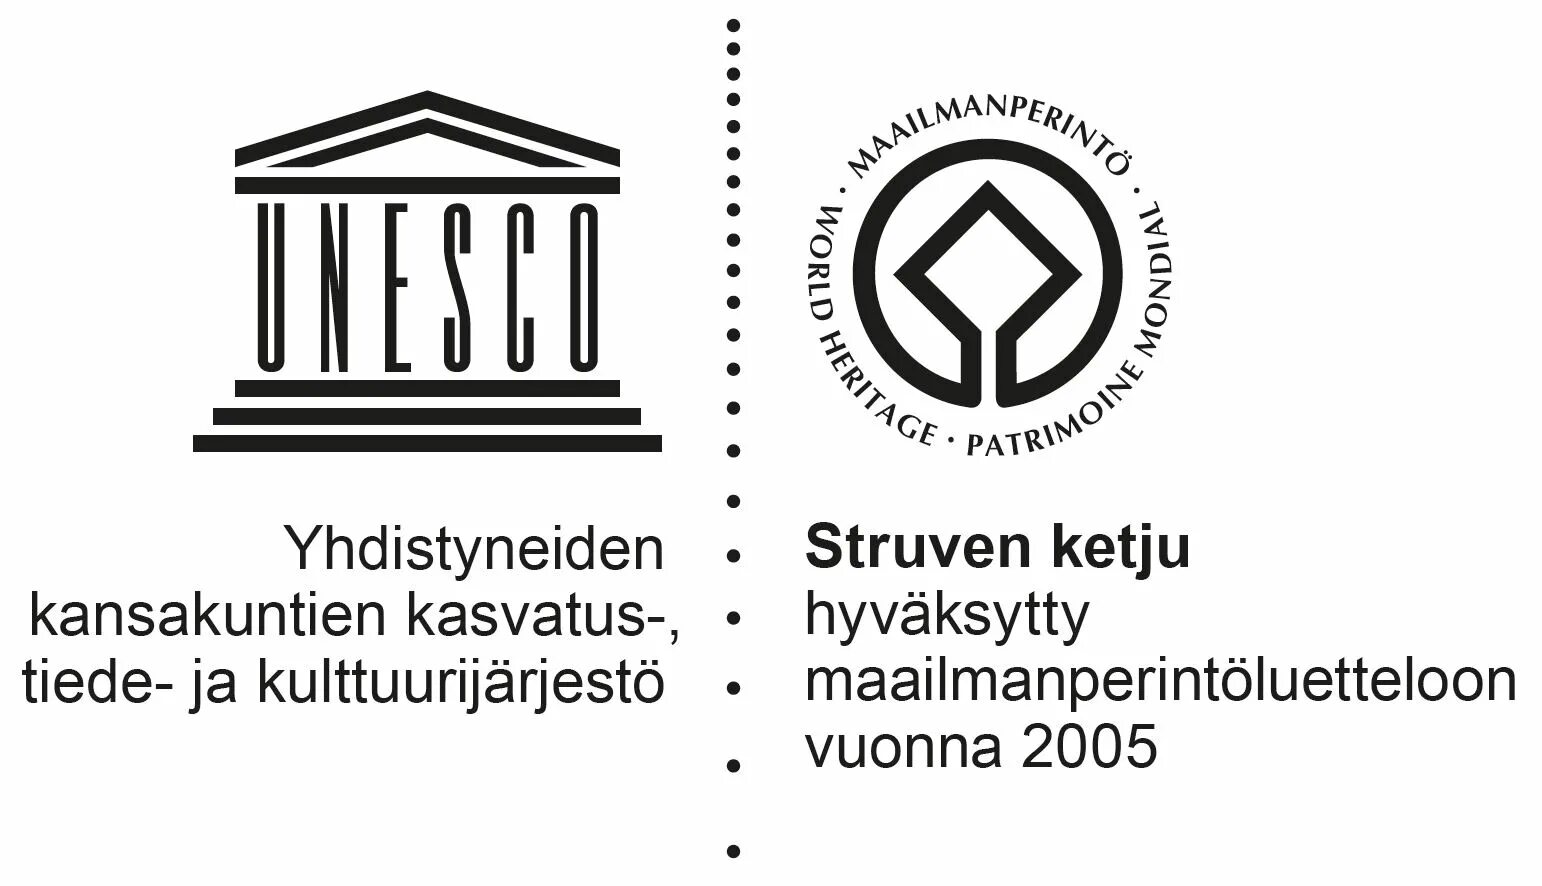 Unesco site. ЮНЕСКО. ЮНЕСКО эмблема. Символ ЮНЕСКО.